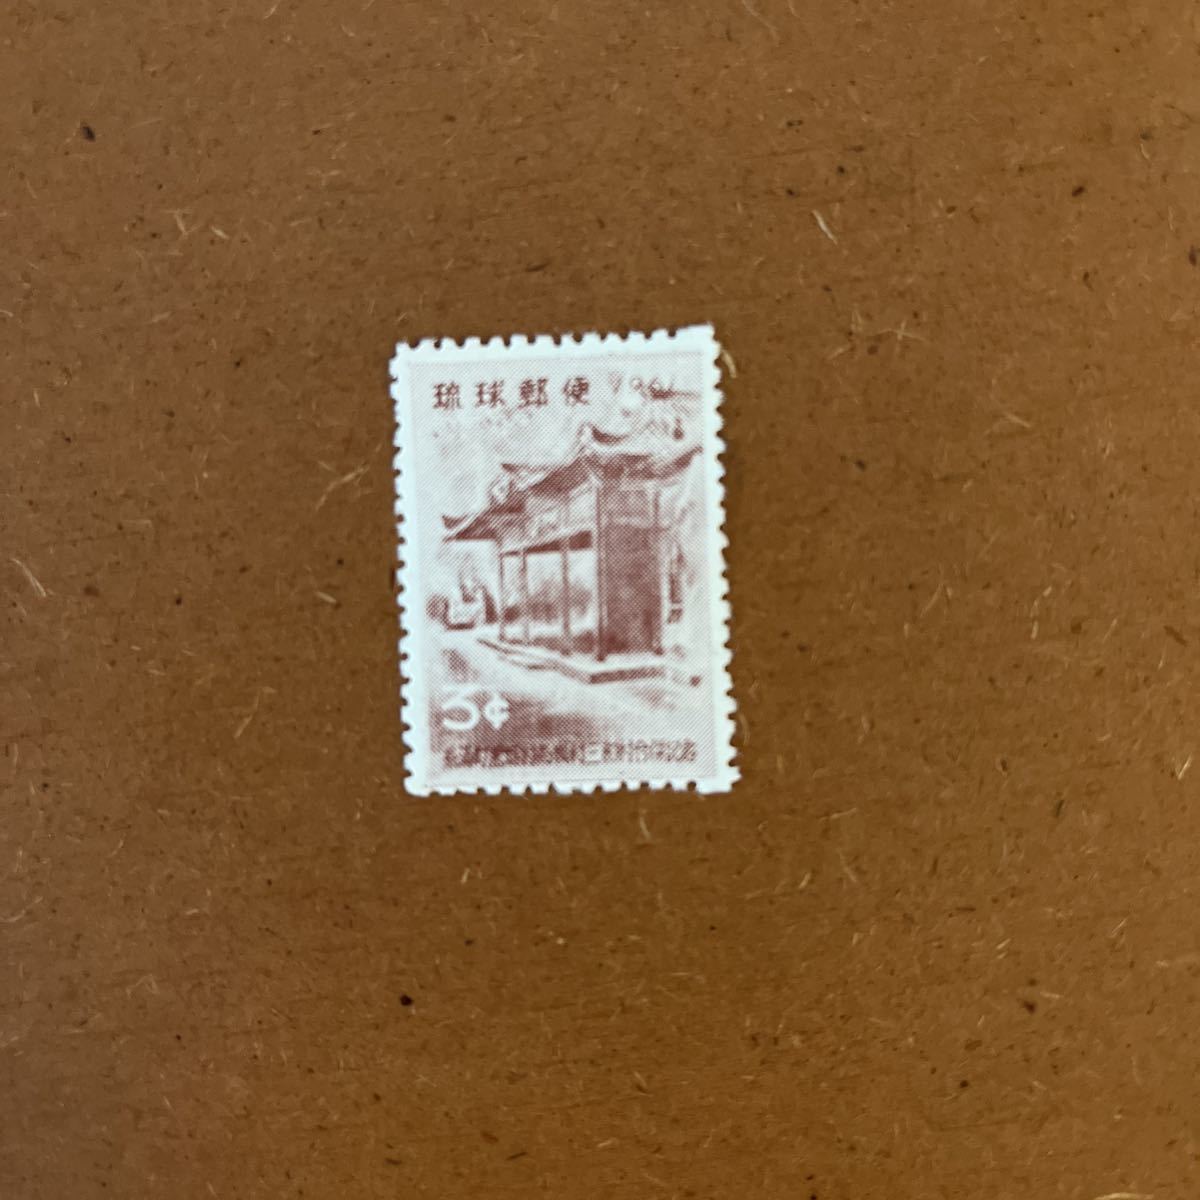 琉球切手・未使用切手・1961年・ 町村合併 ・3¢・沖縄・の画像1